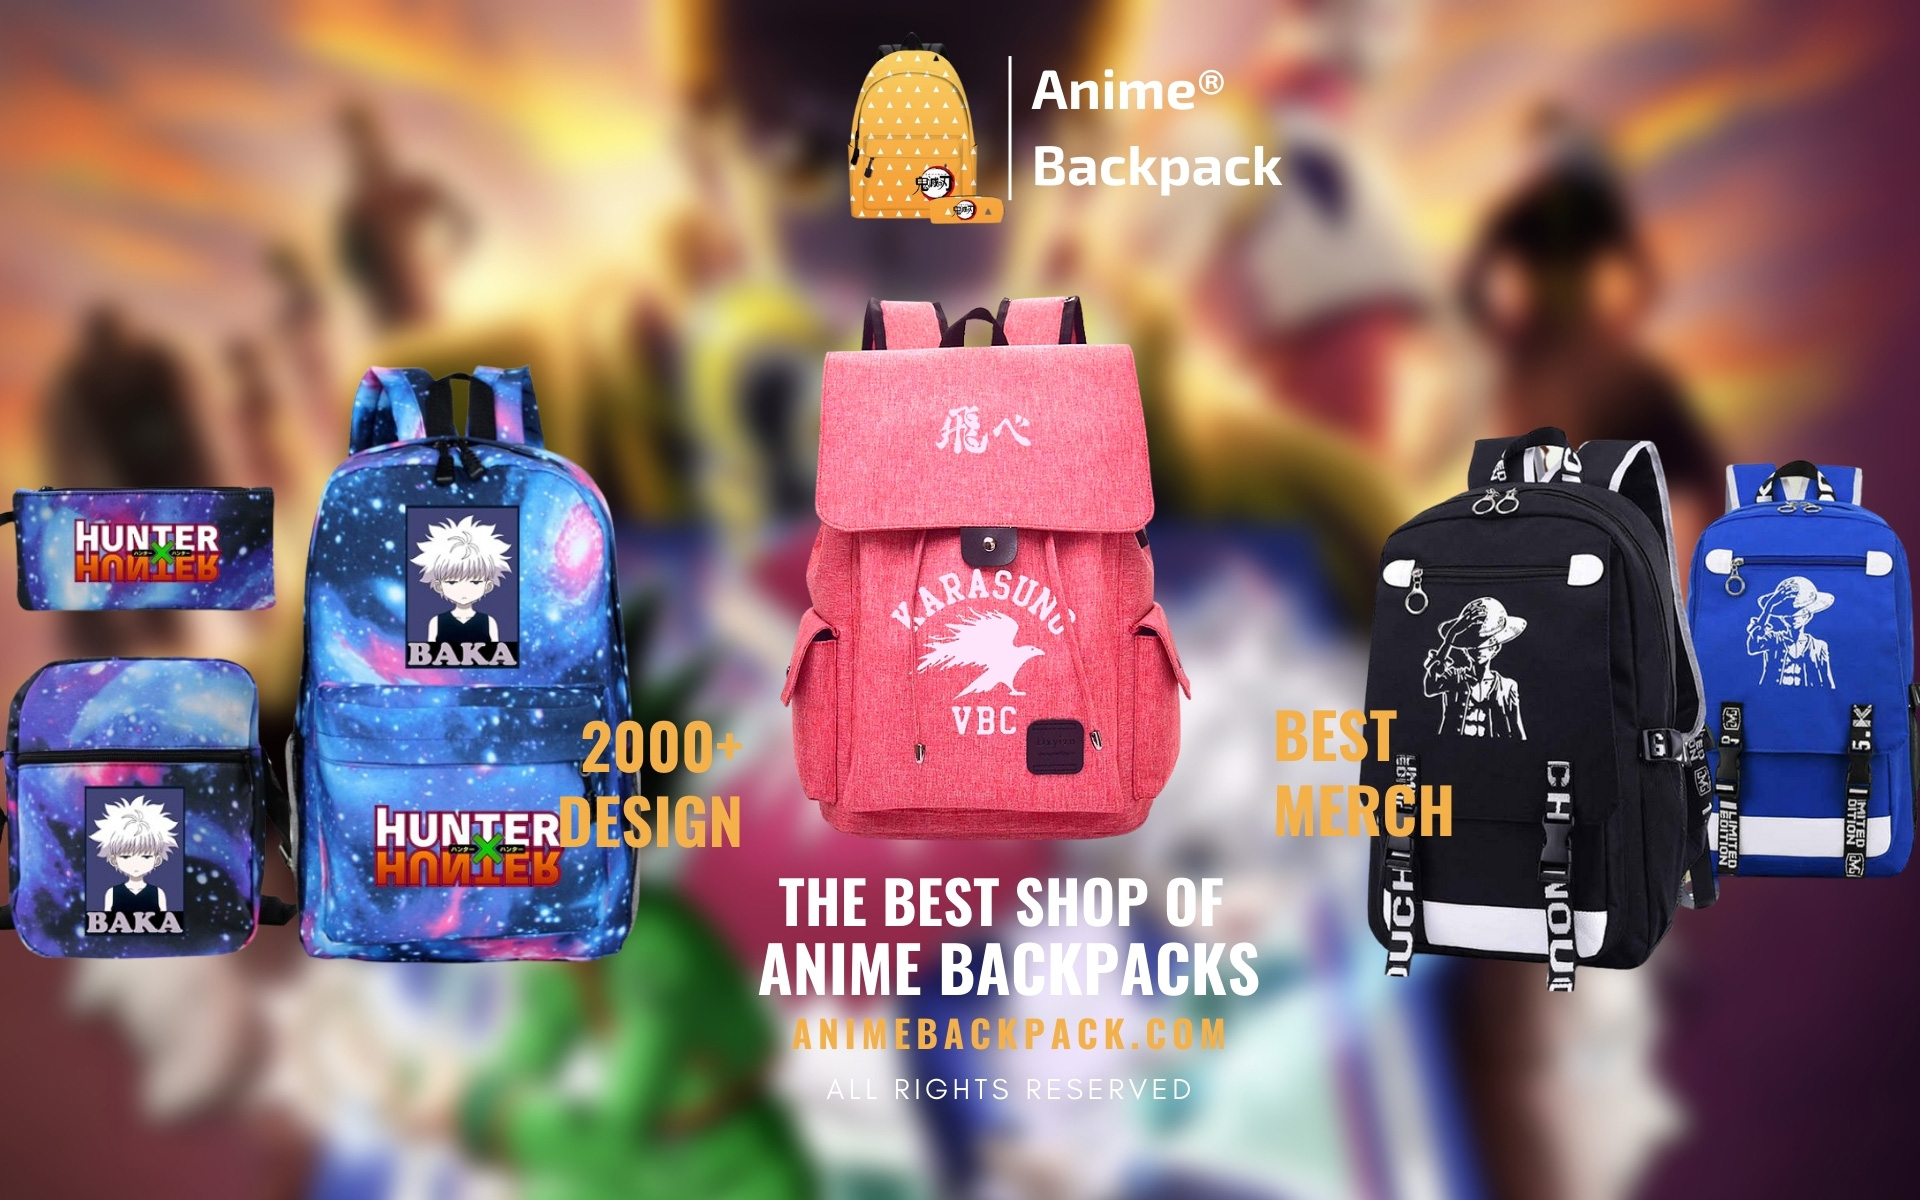 Anime Backpack Web Banner 1 - Anime Backpacks